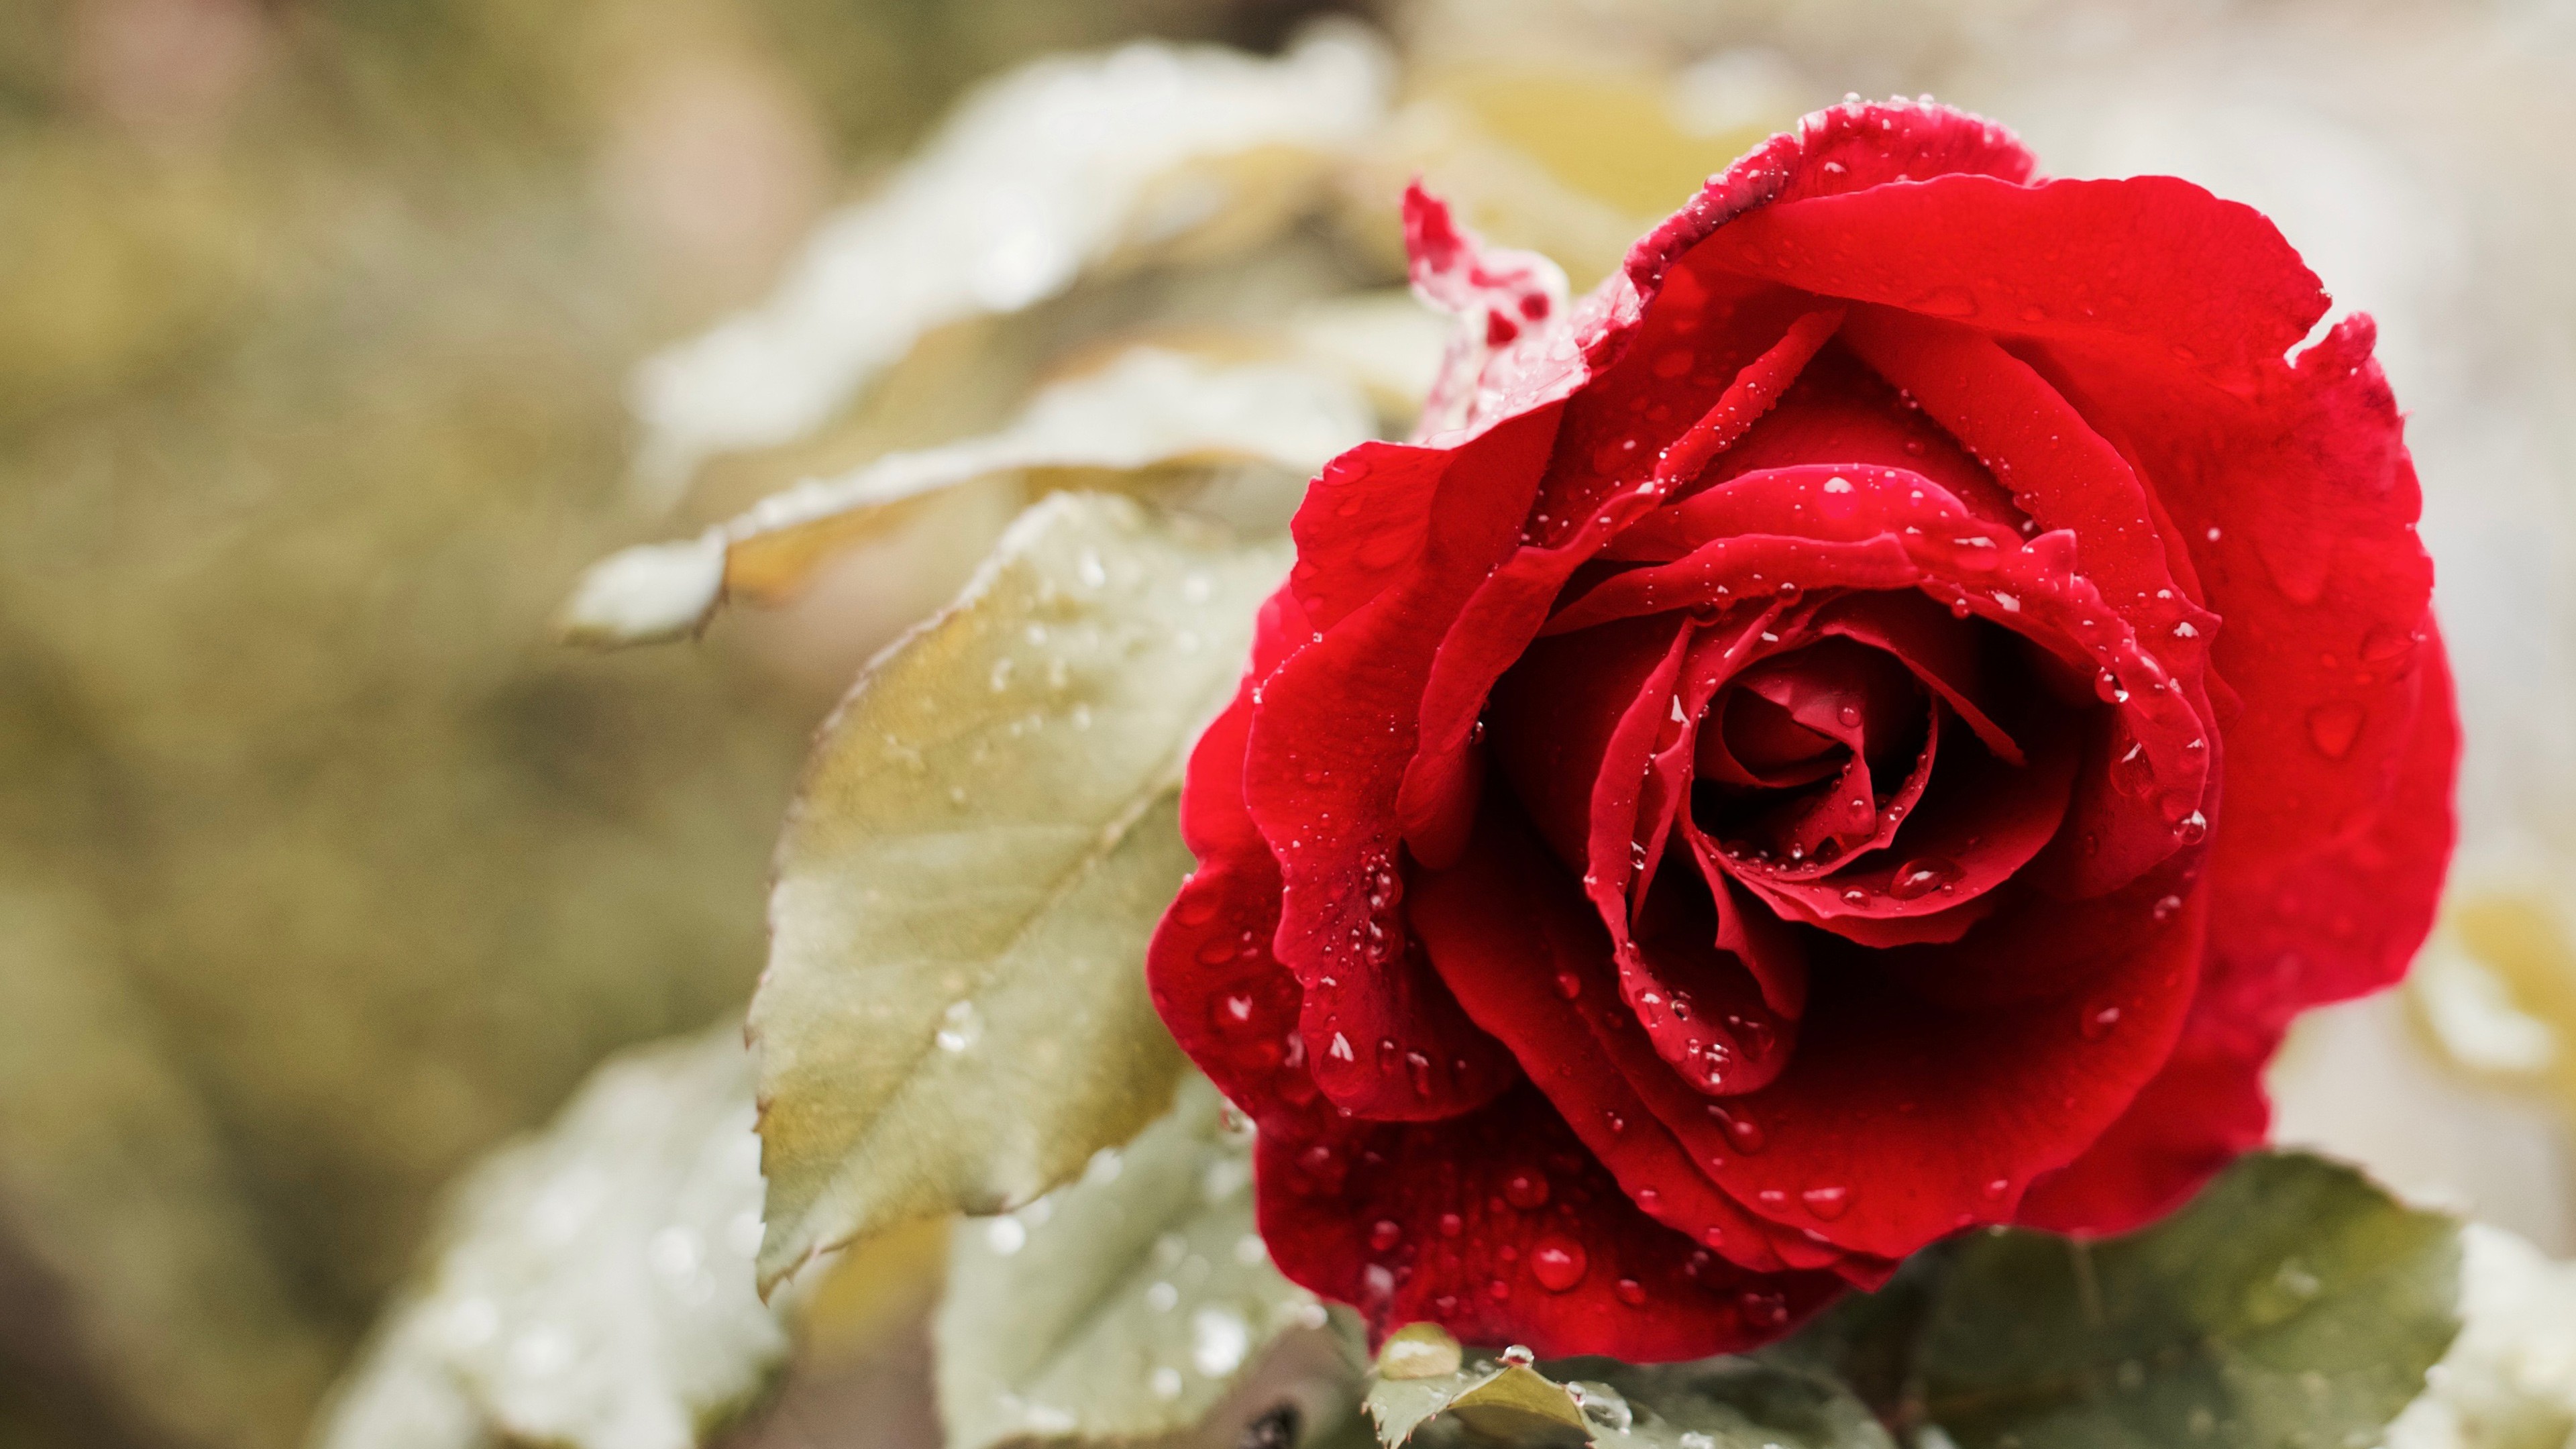 Rose is beautiful. Красивые розы. Красные розы. Самые красивые розы.